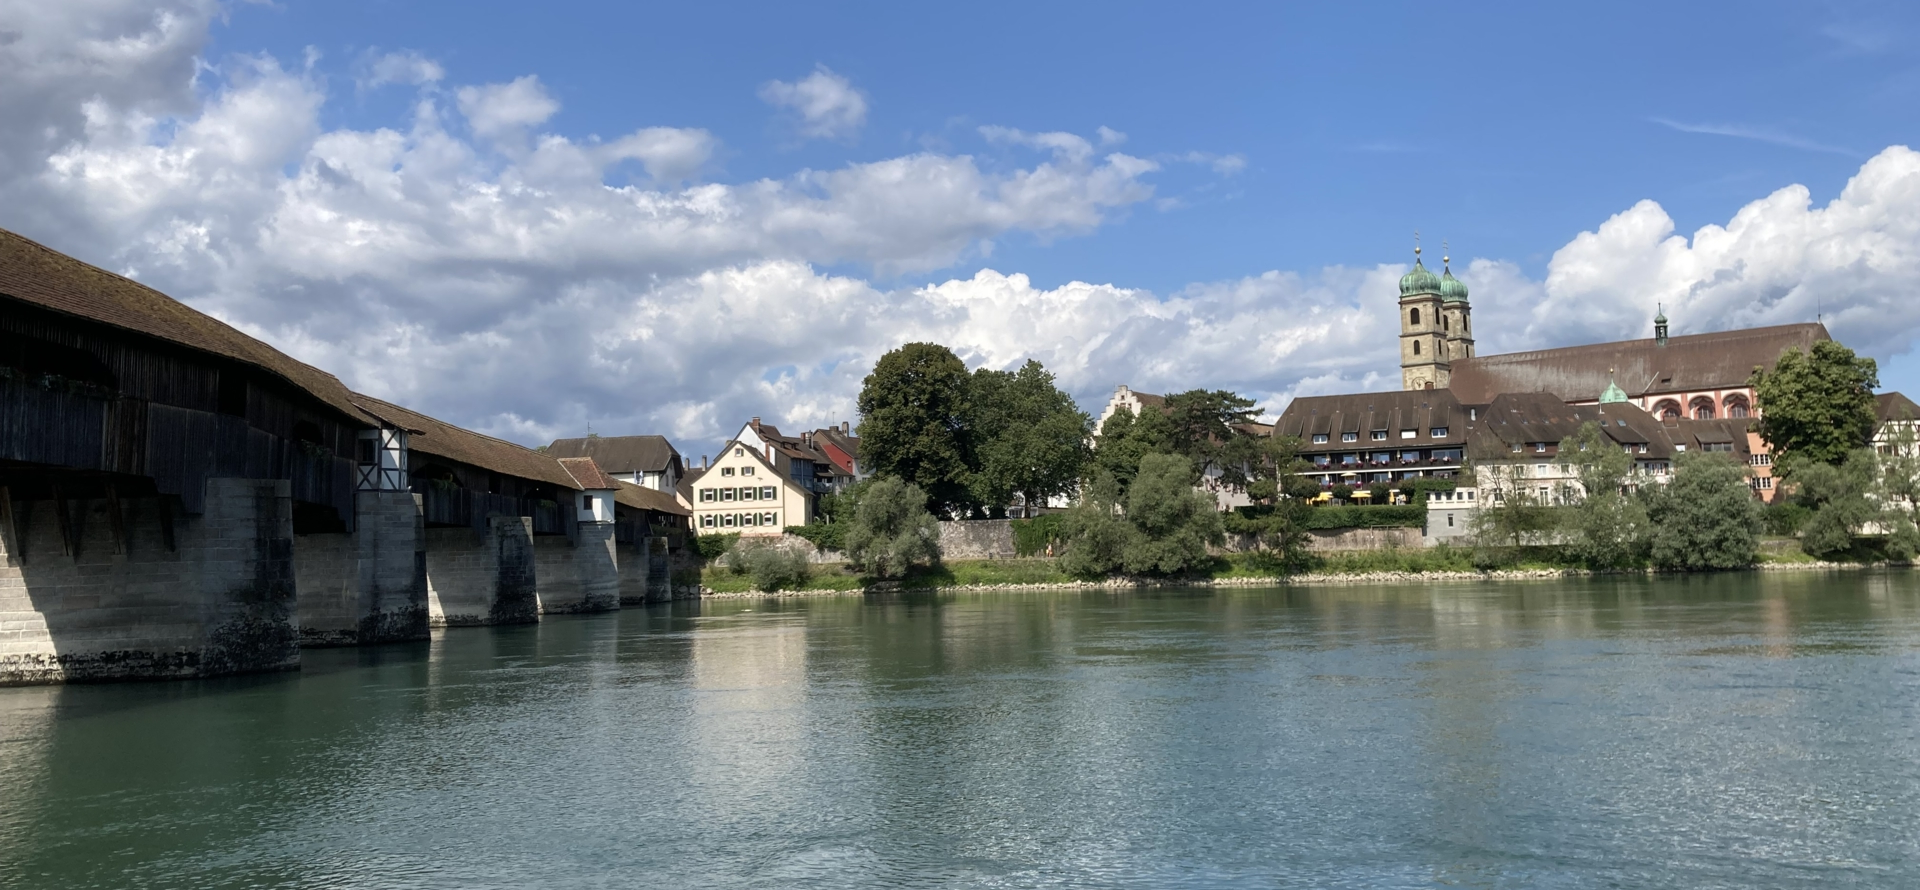 Historische Brücke in Bad Säckingen